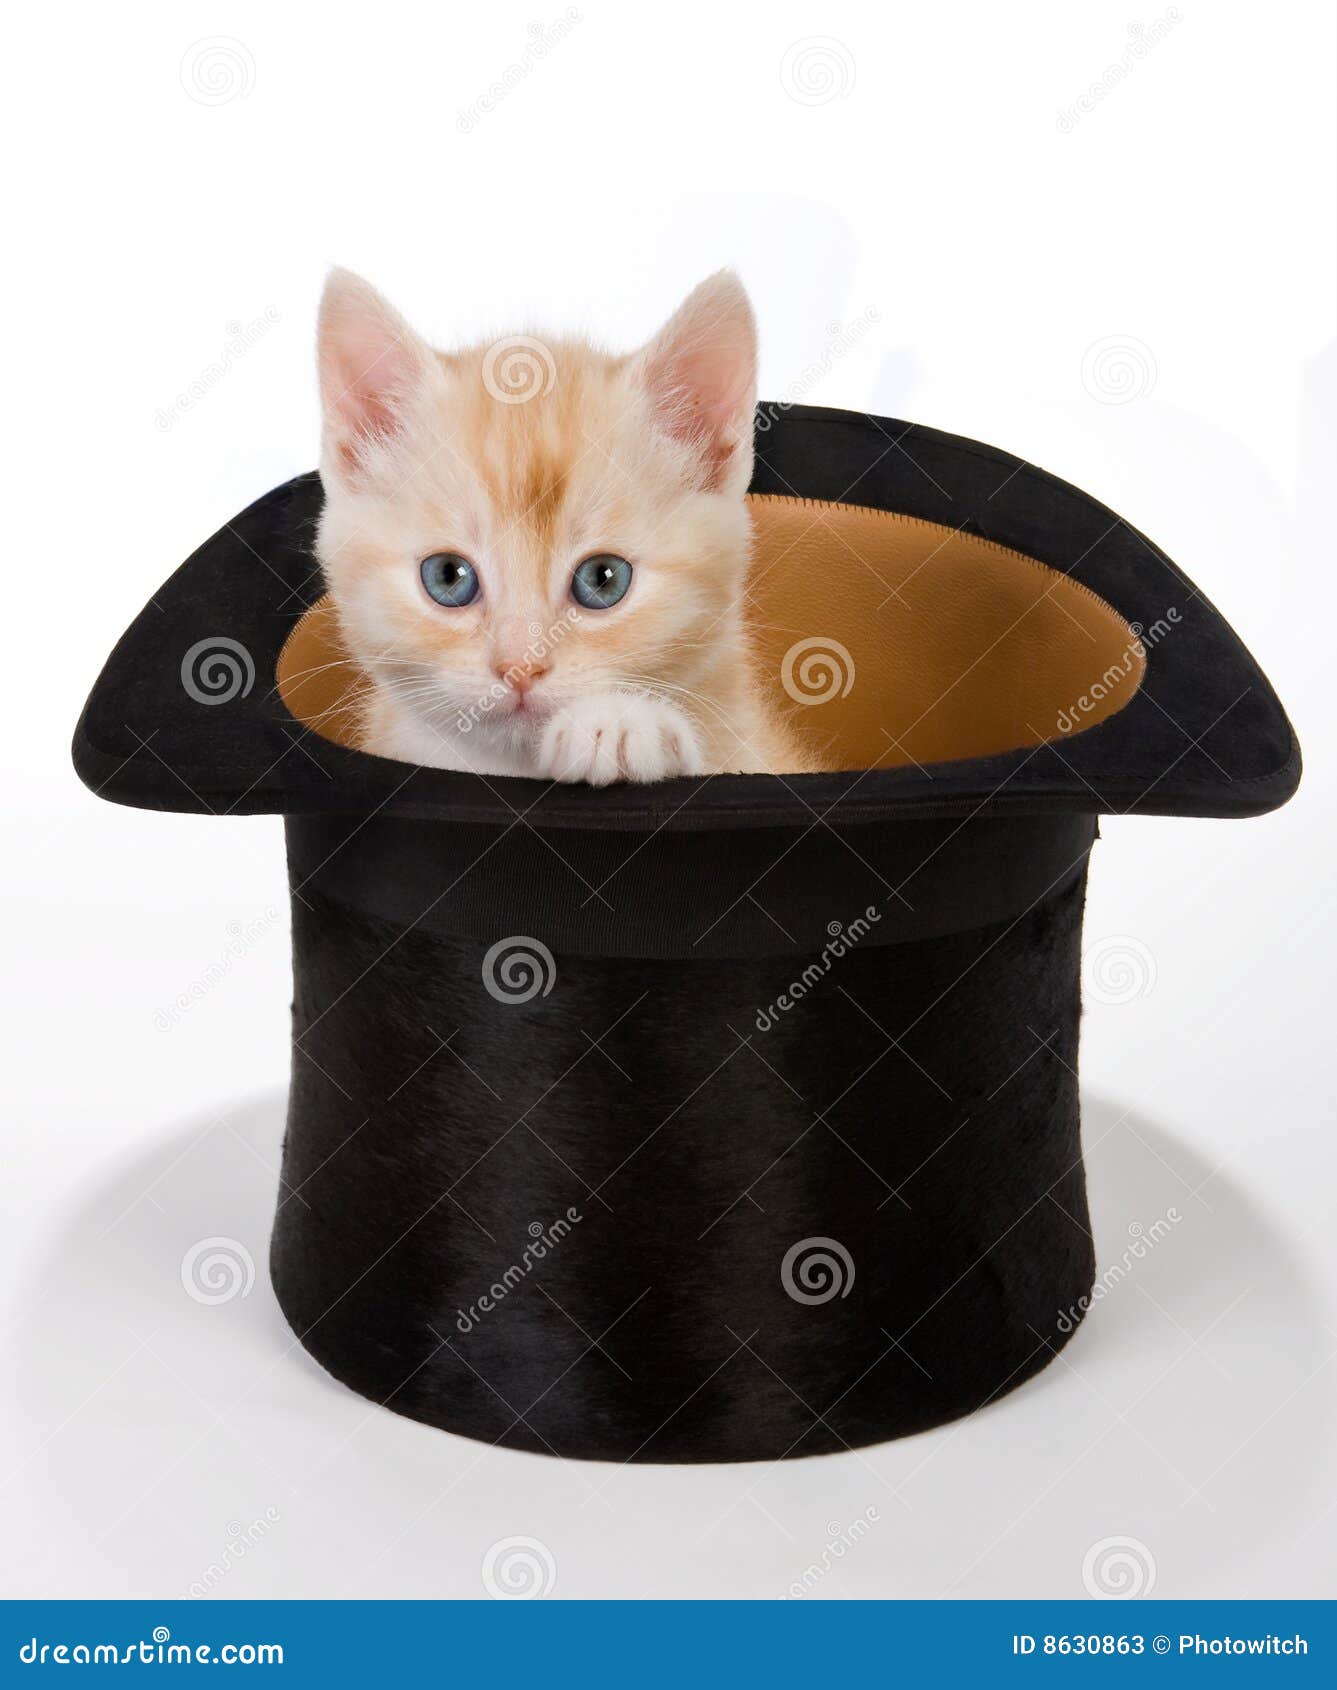 Gato mágico imagem de stock. Imagem de pelaria, maca, pequeno